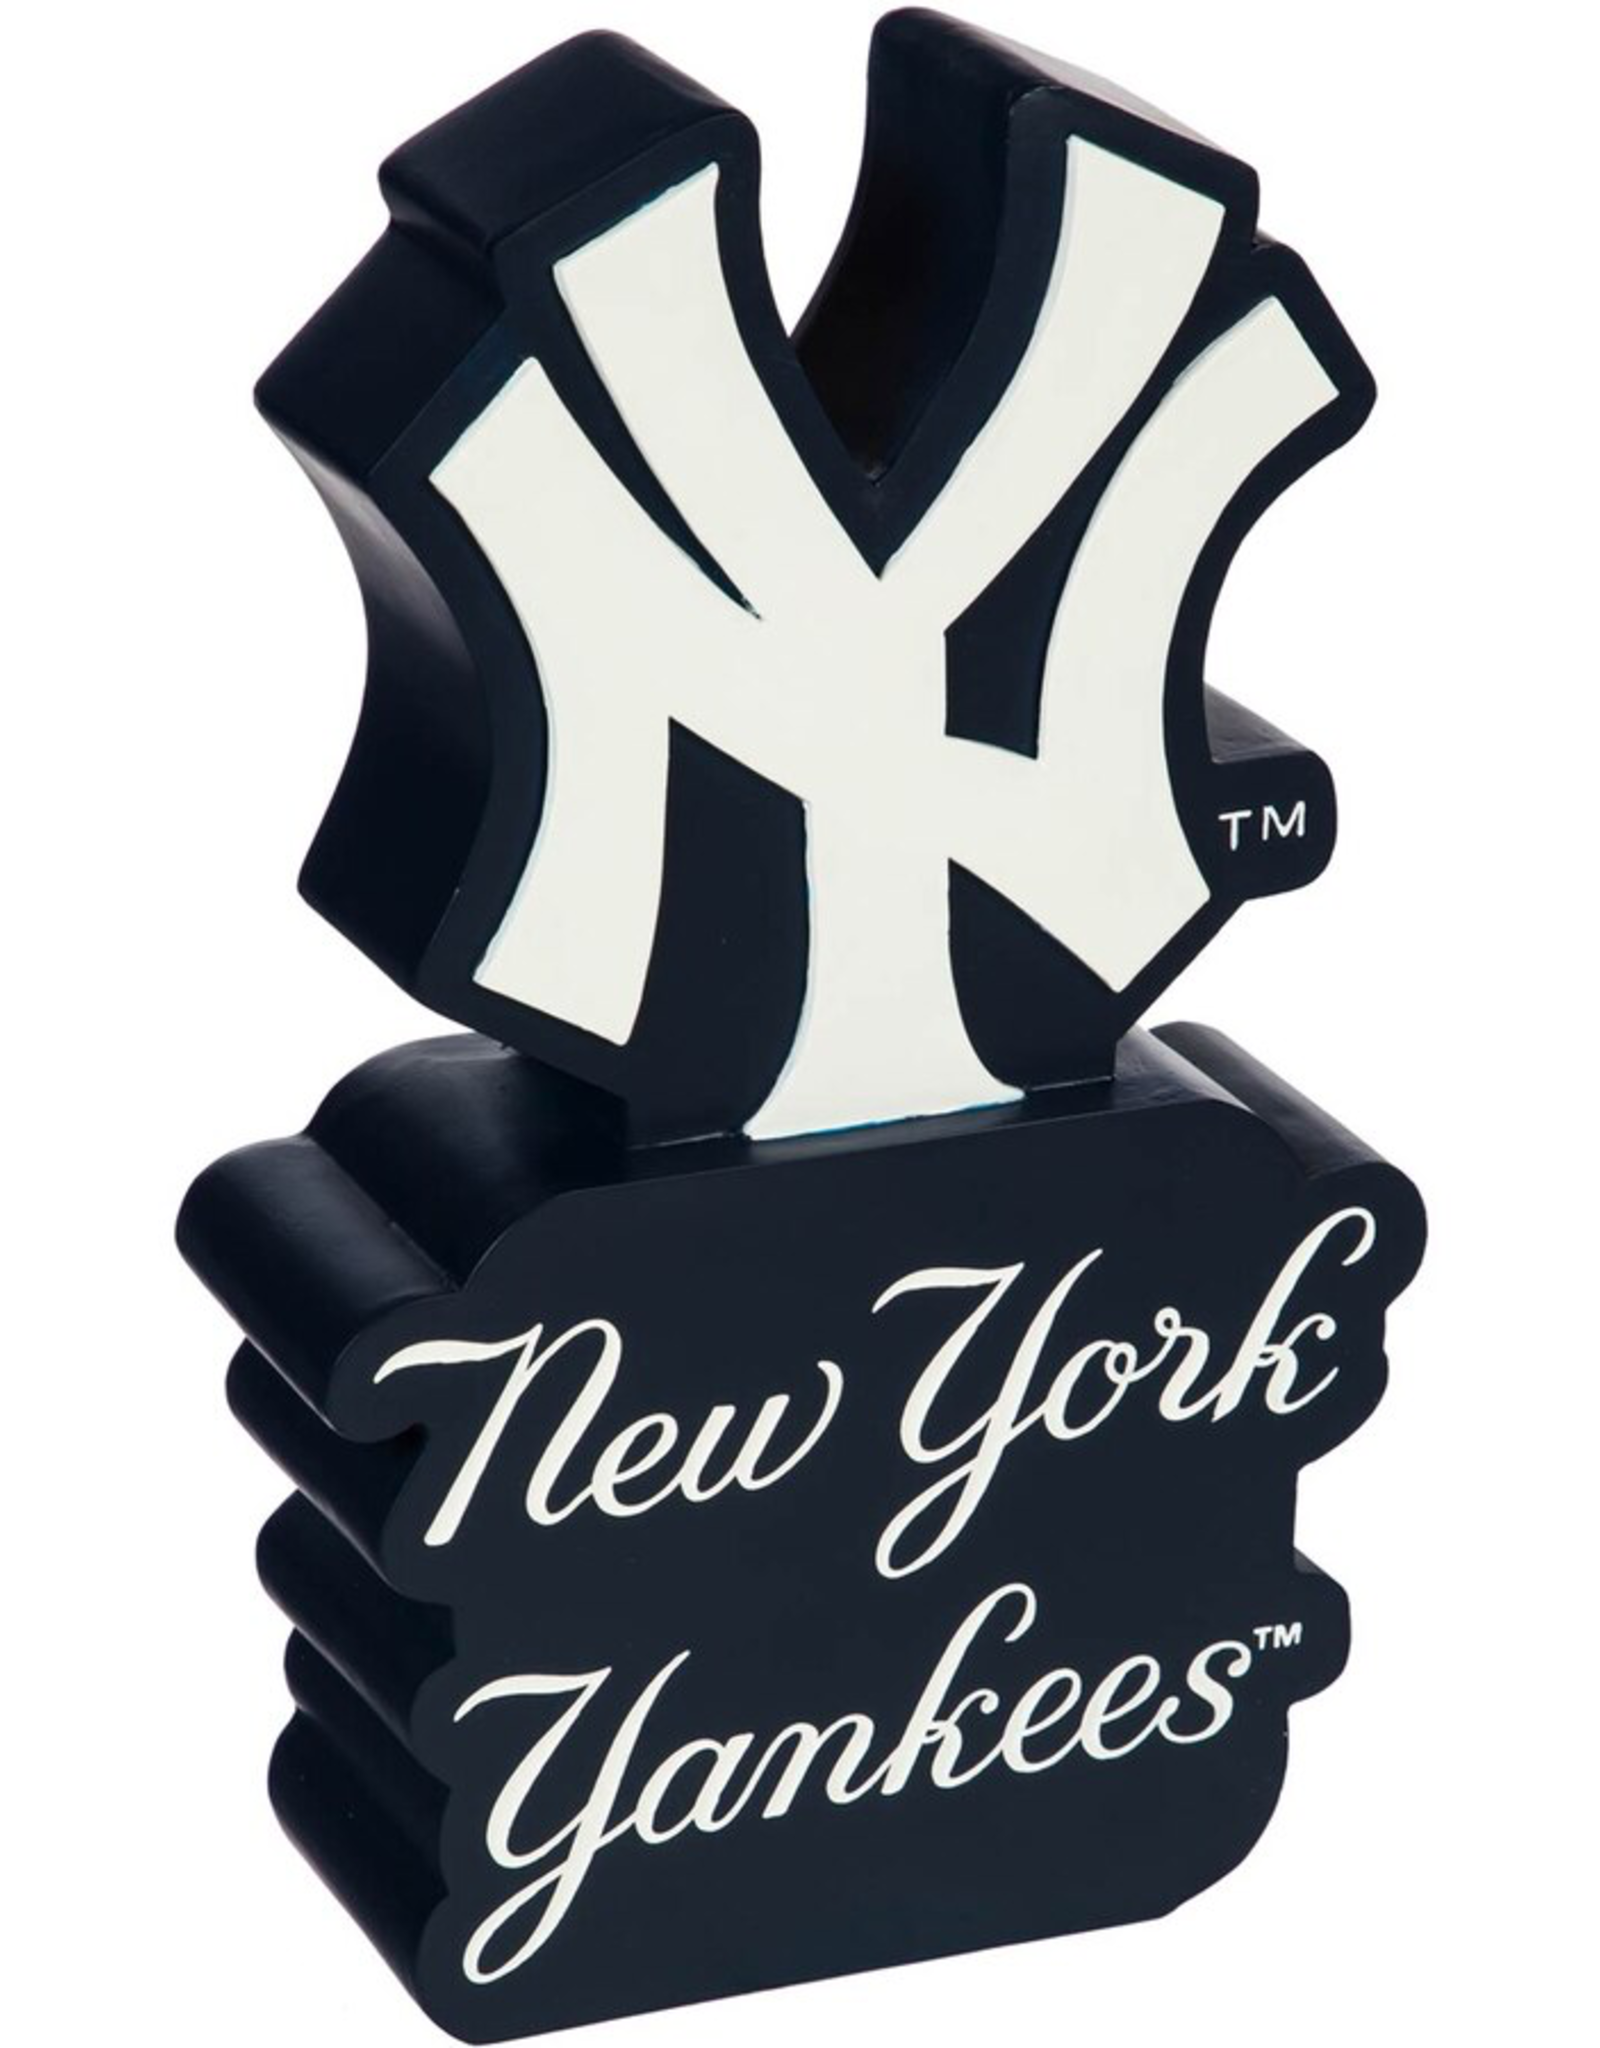 EVERGREEN New York Yankees Mascot Statue